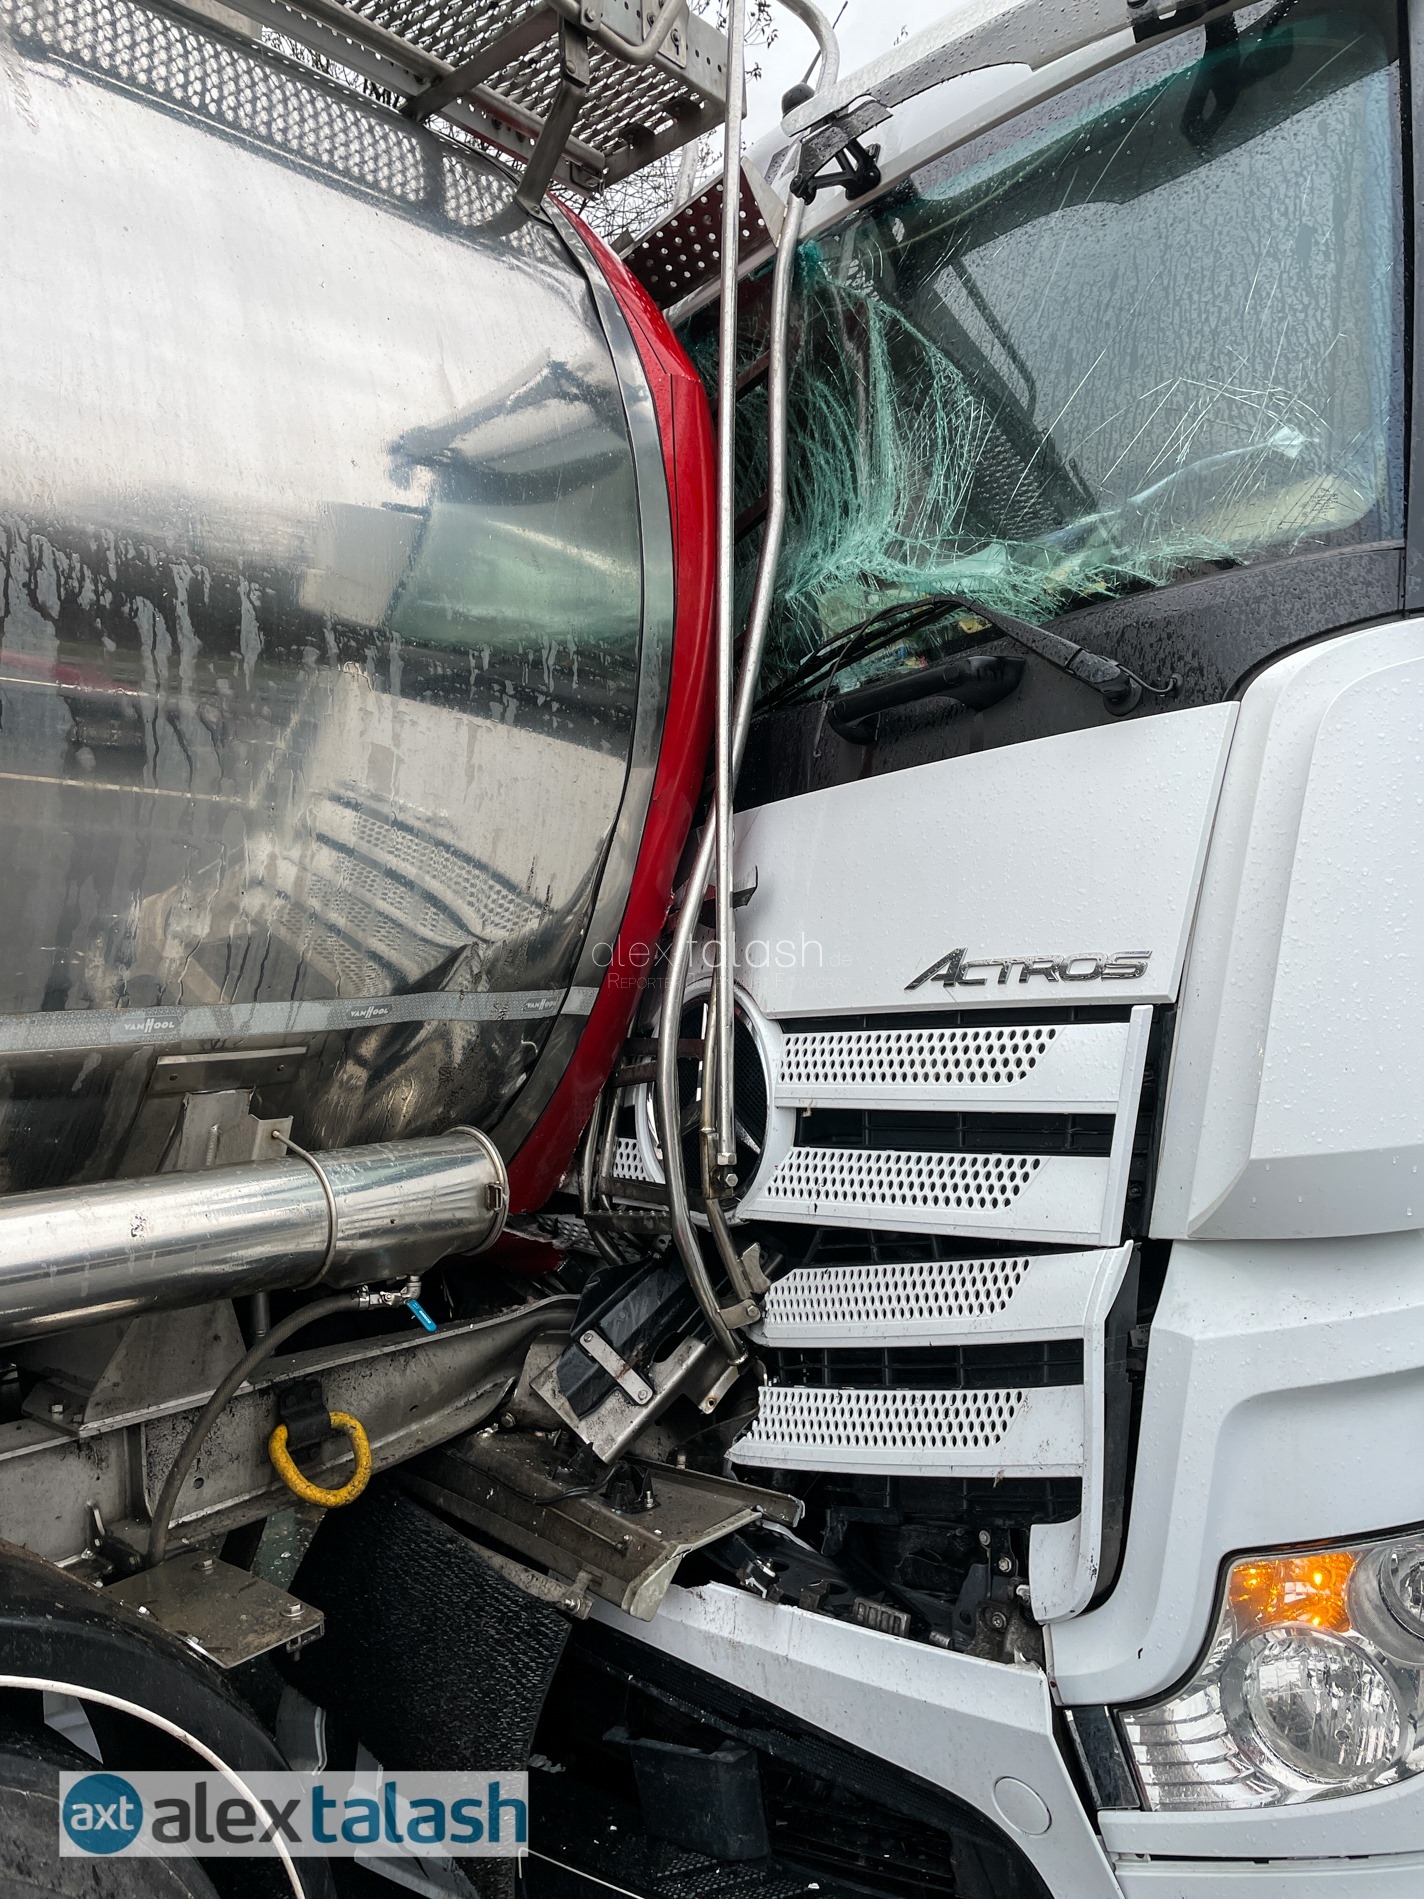 Über 10 Kilometer Stau: Unfall mit Gefahrgut-Lkw auf der A1 bei Hagen